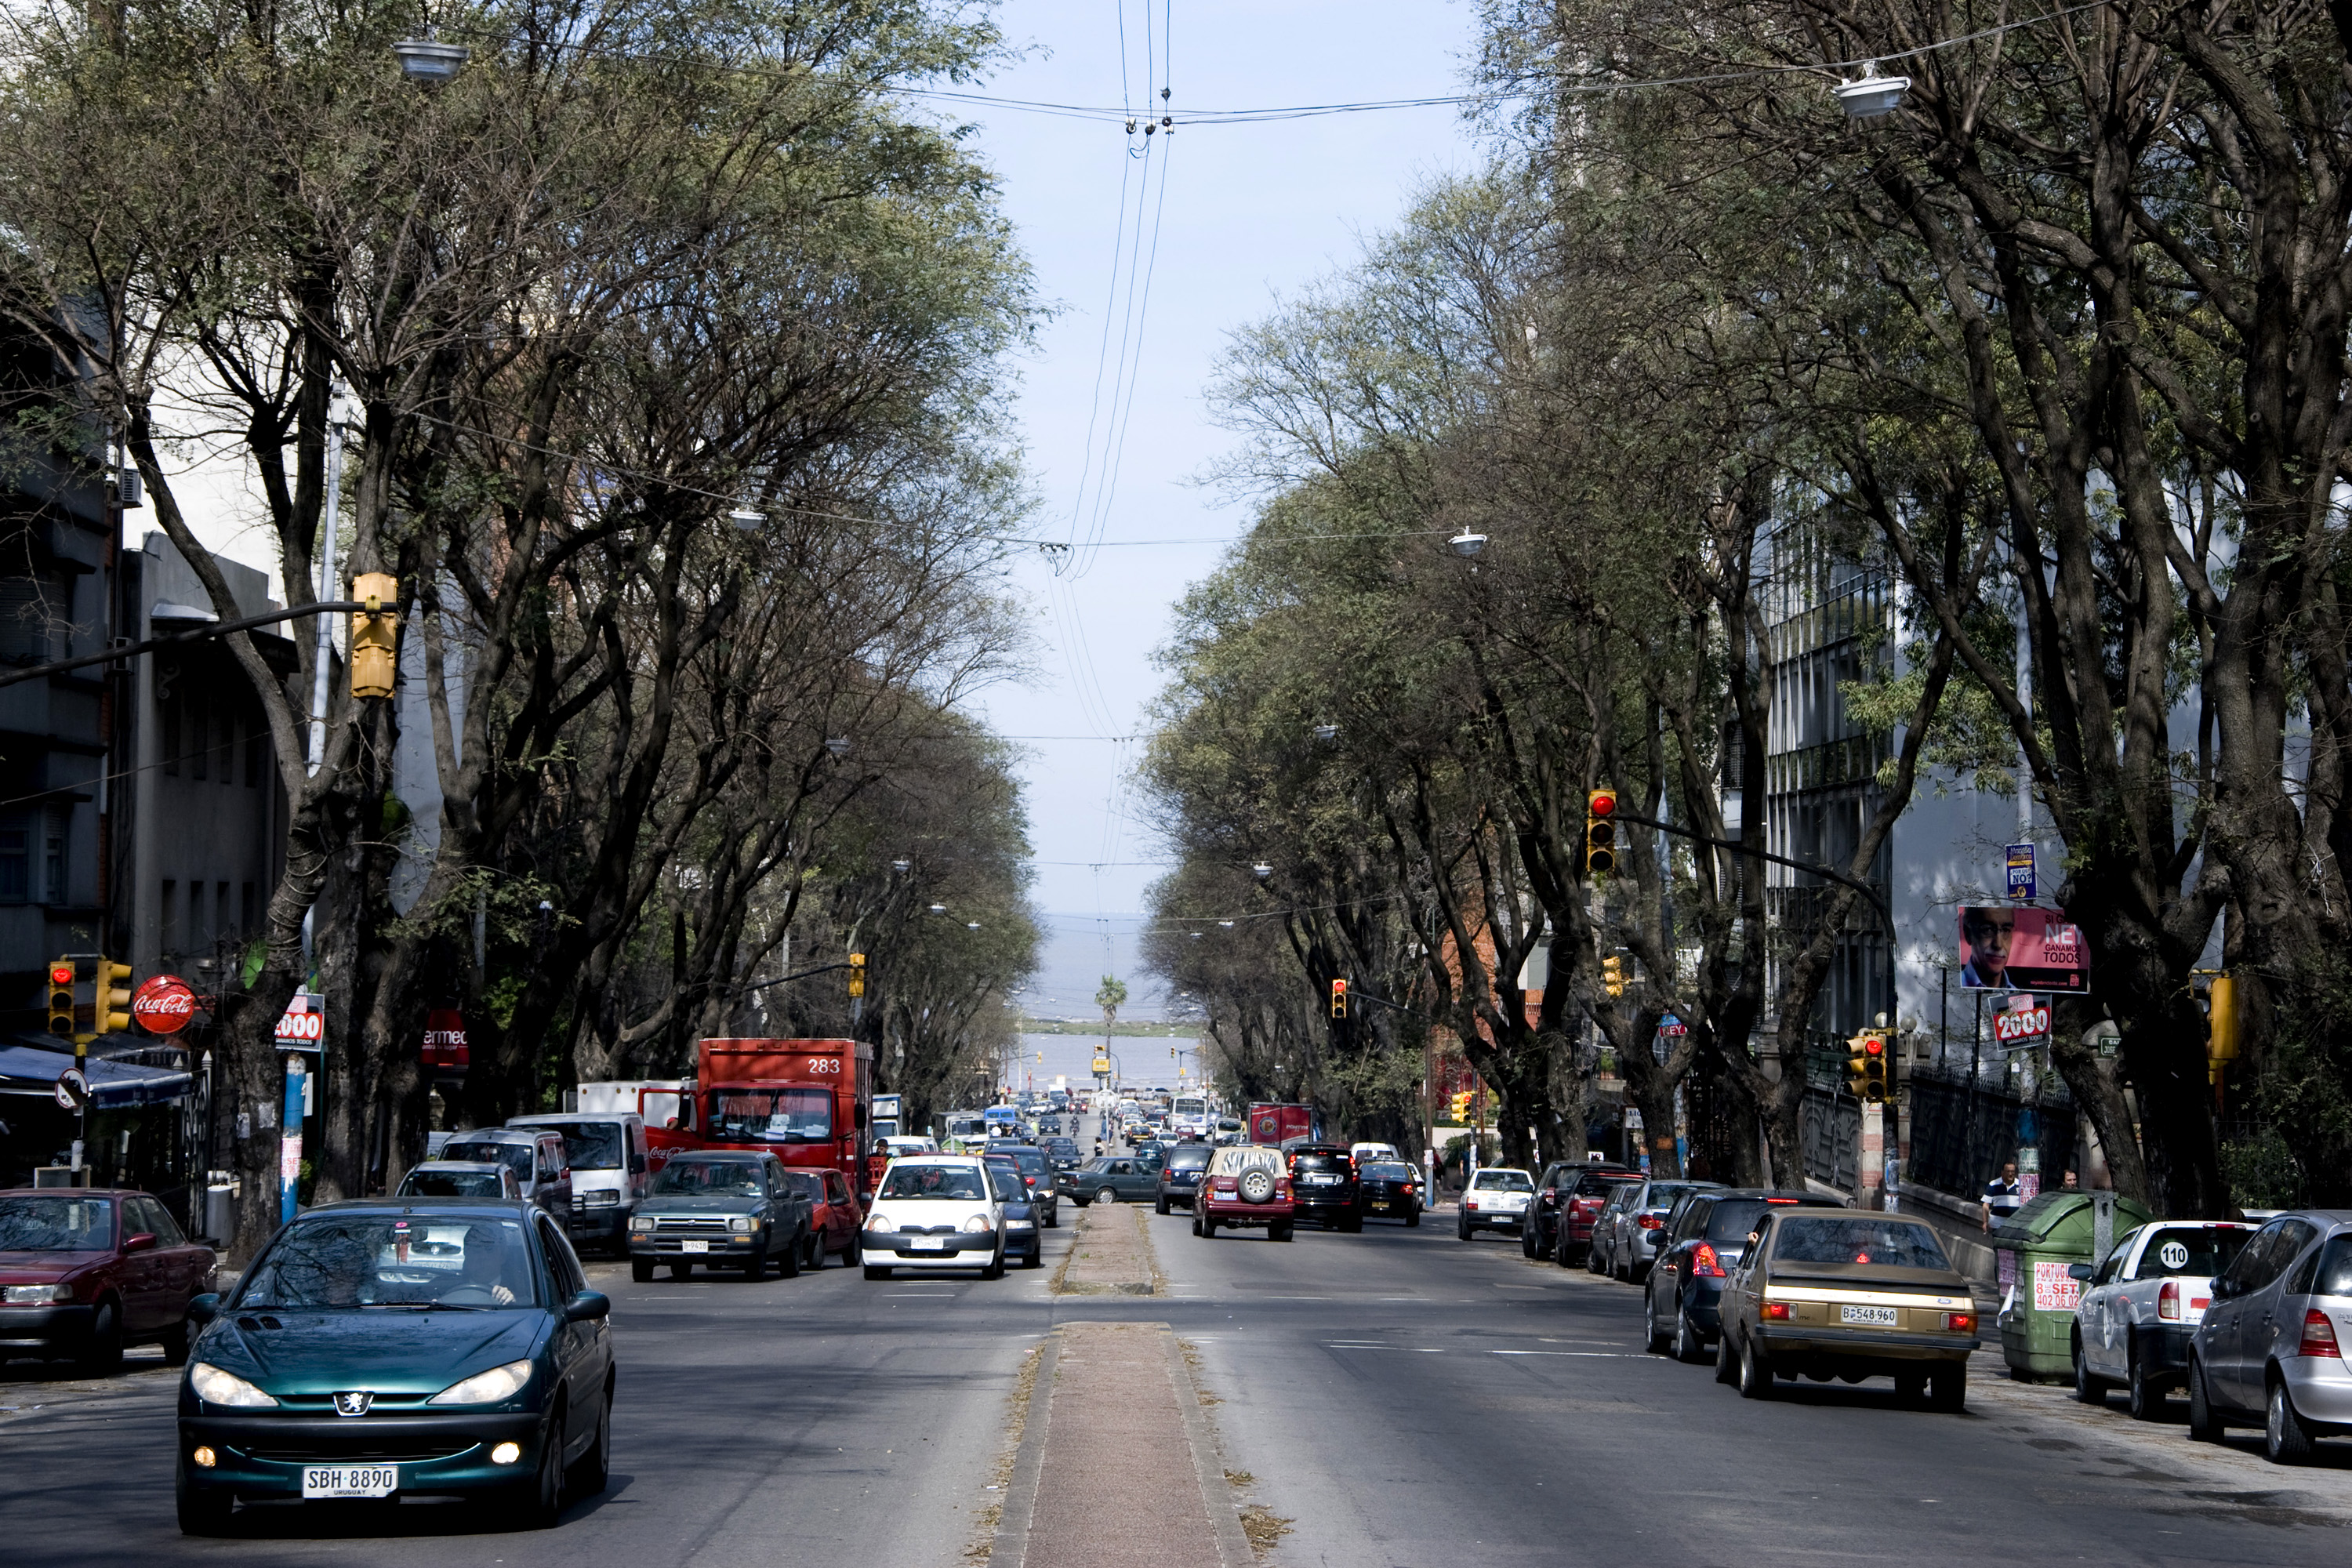 Avenida Brasil